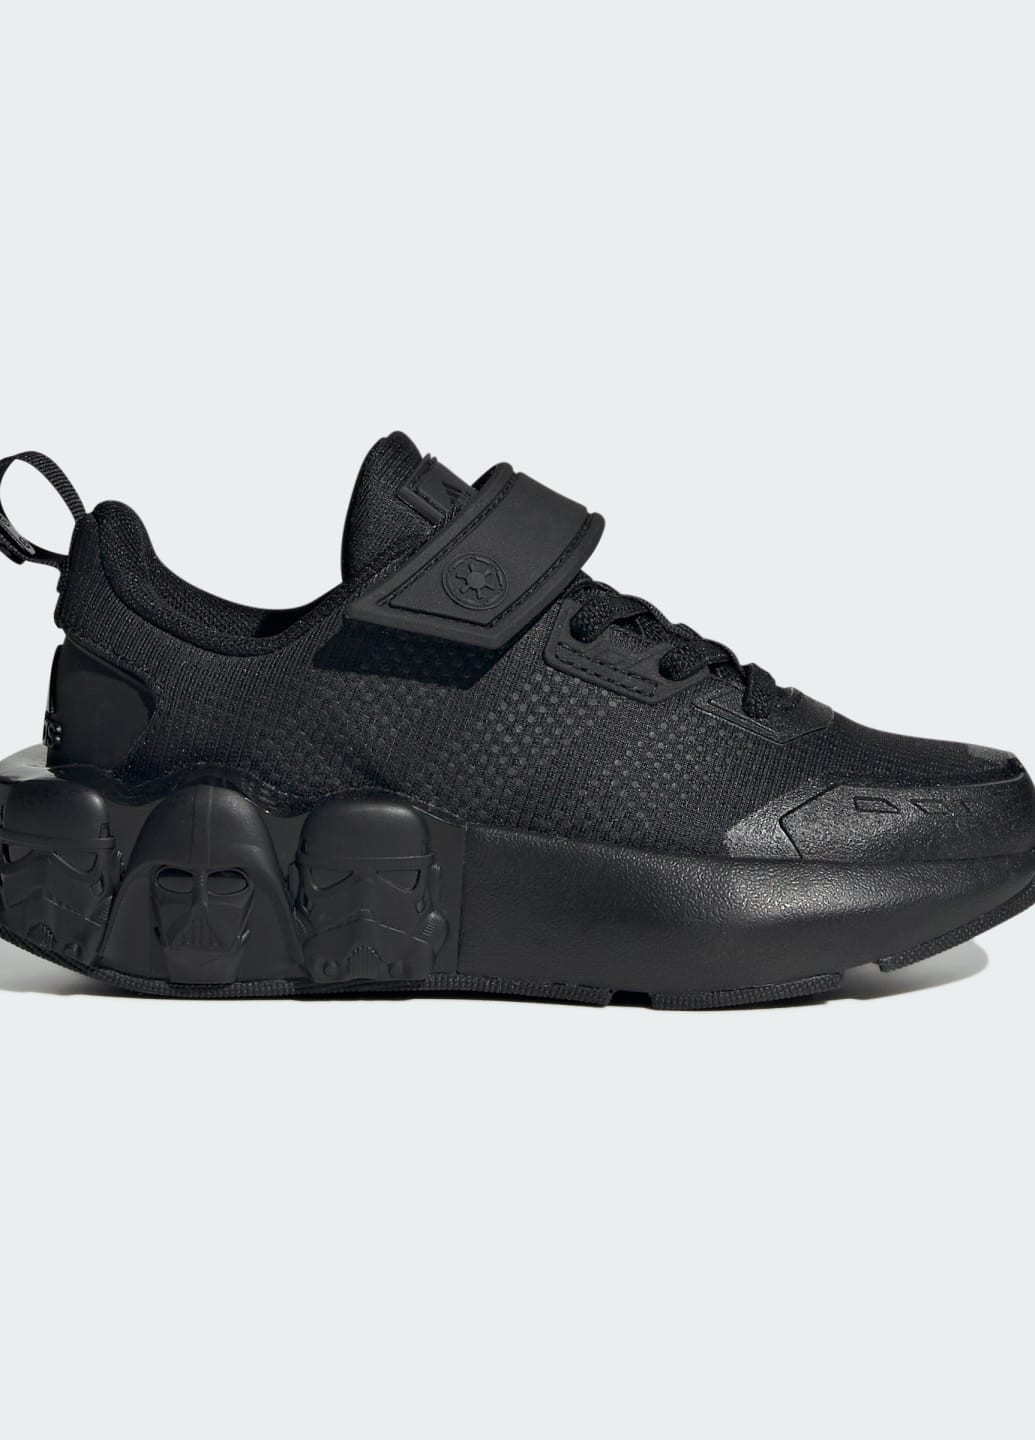 Черные всесезонные кроссовки star wars runner kids adidas